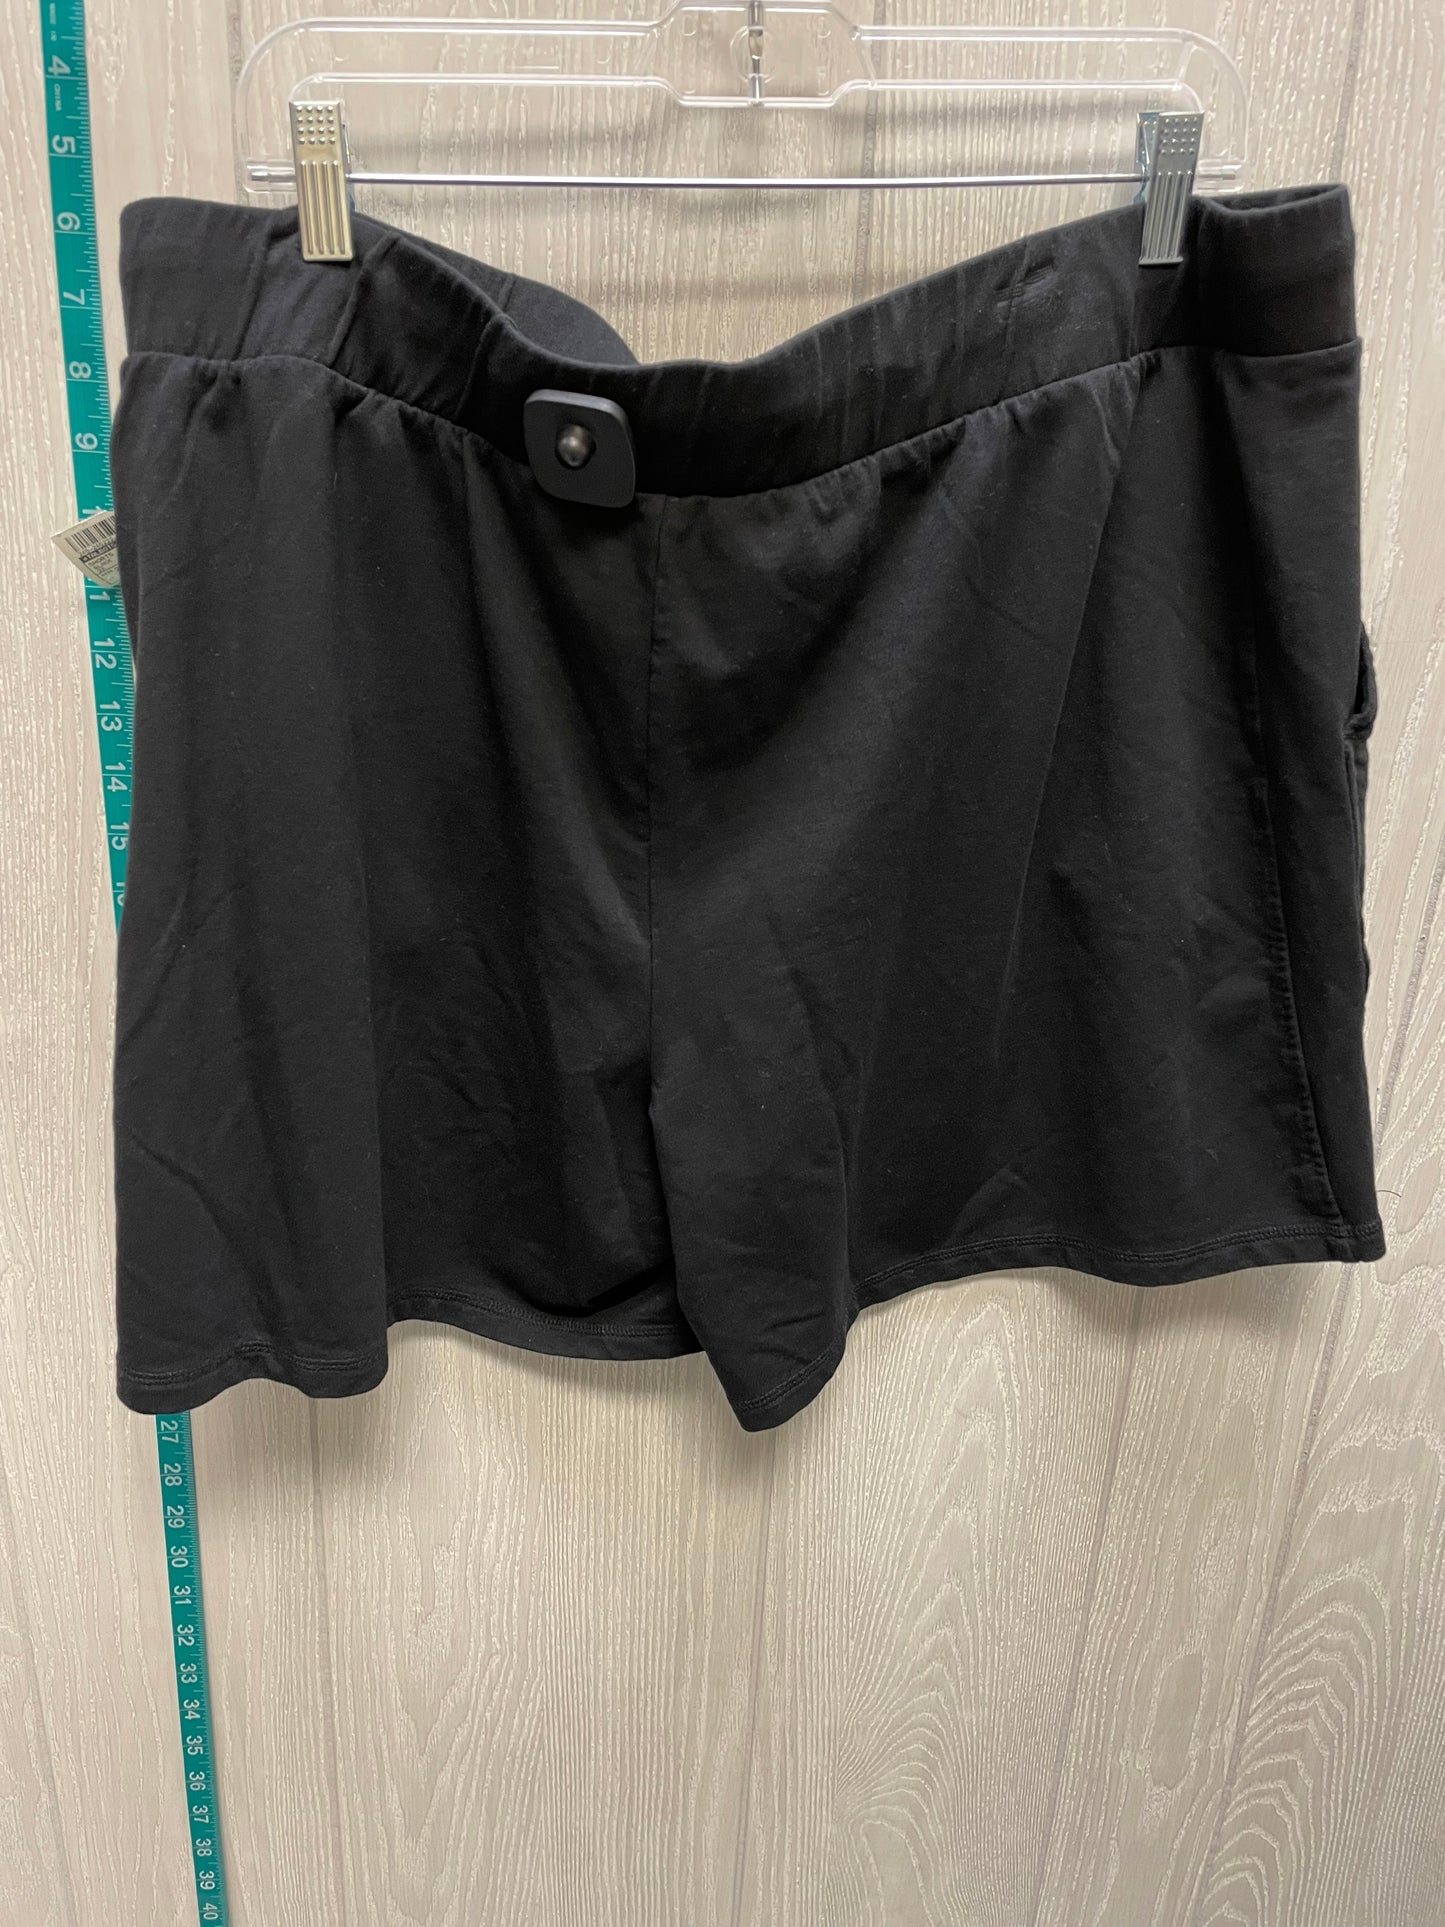 Black Shorts Talbots, Size 2x